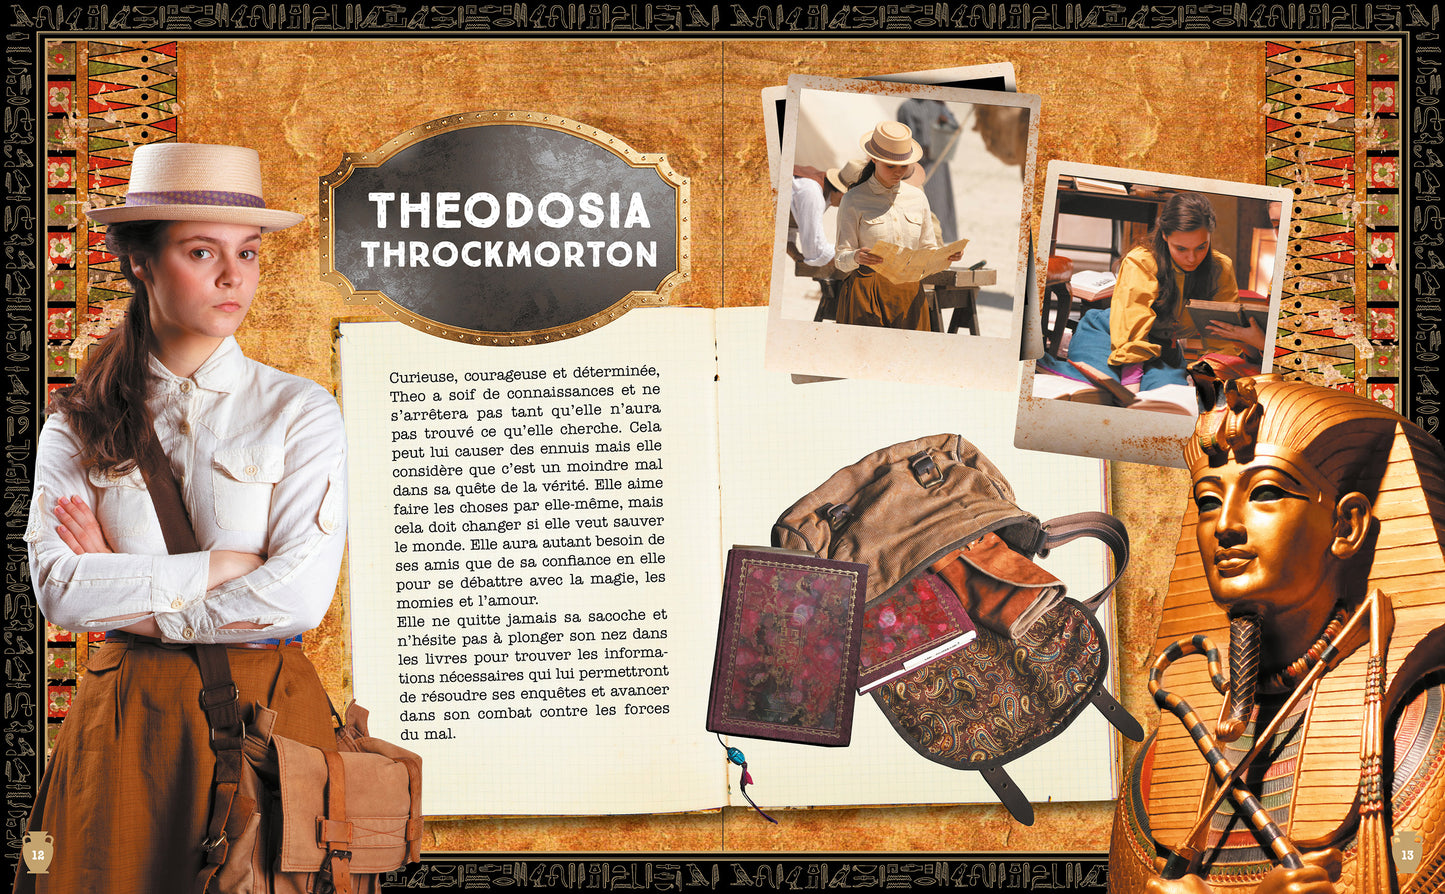 Theodosia escape book